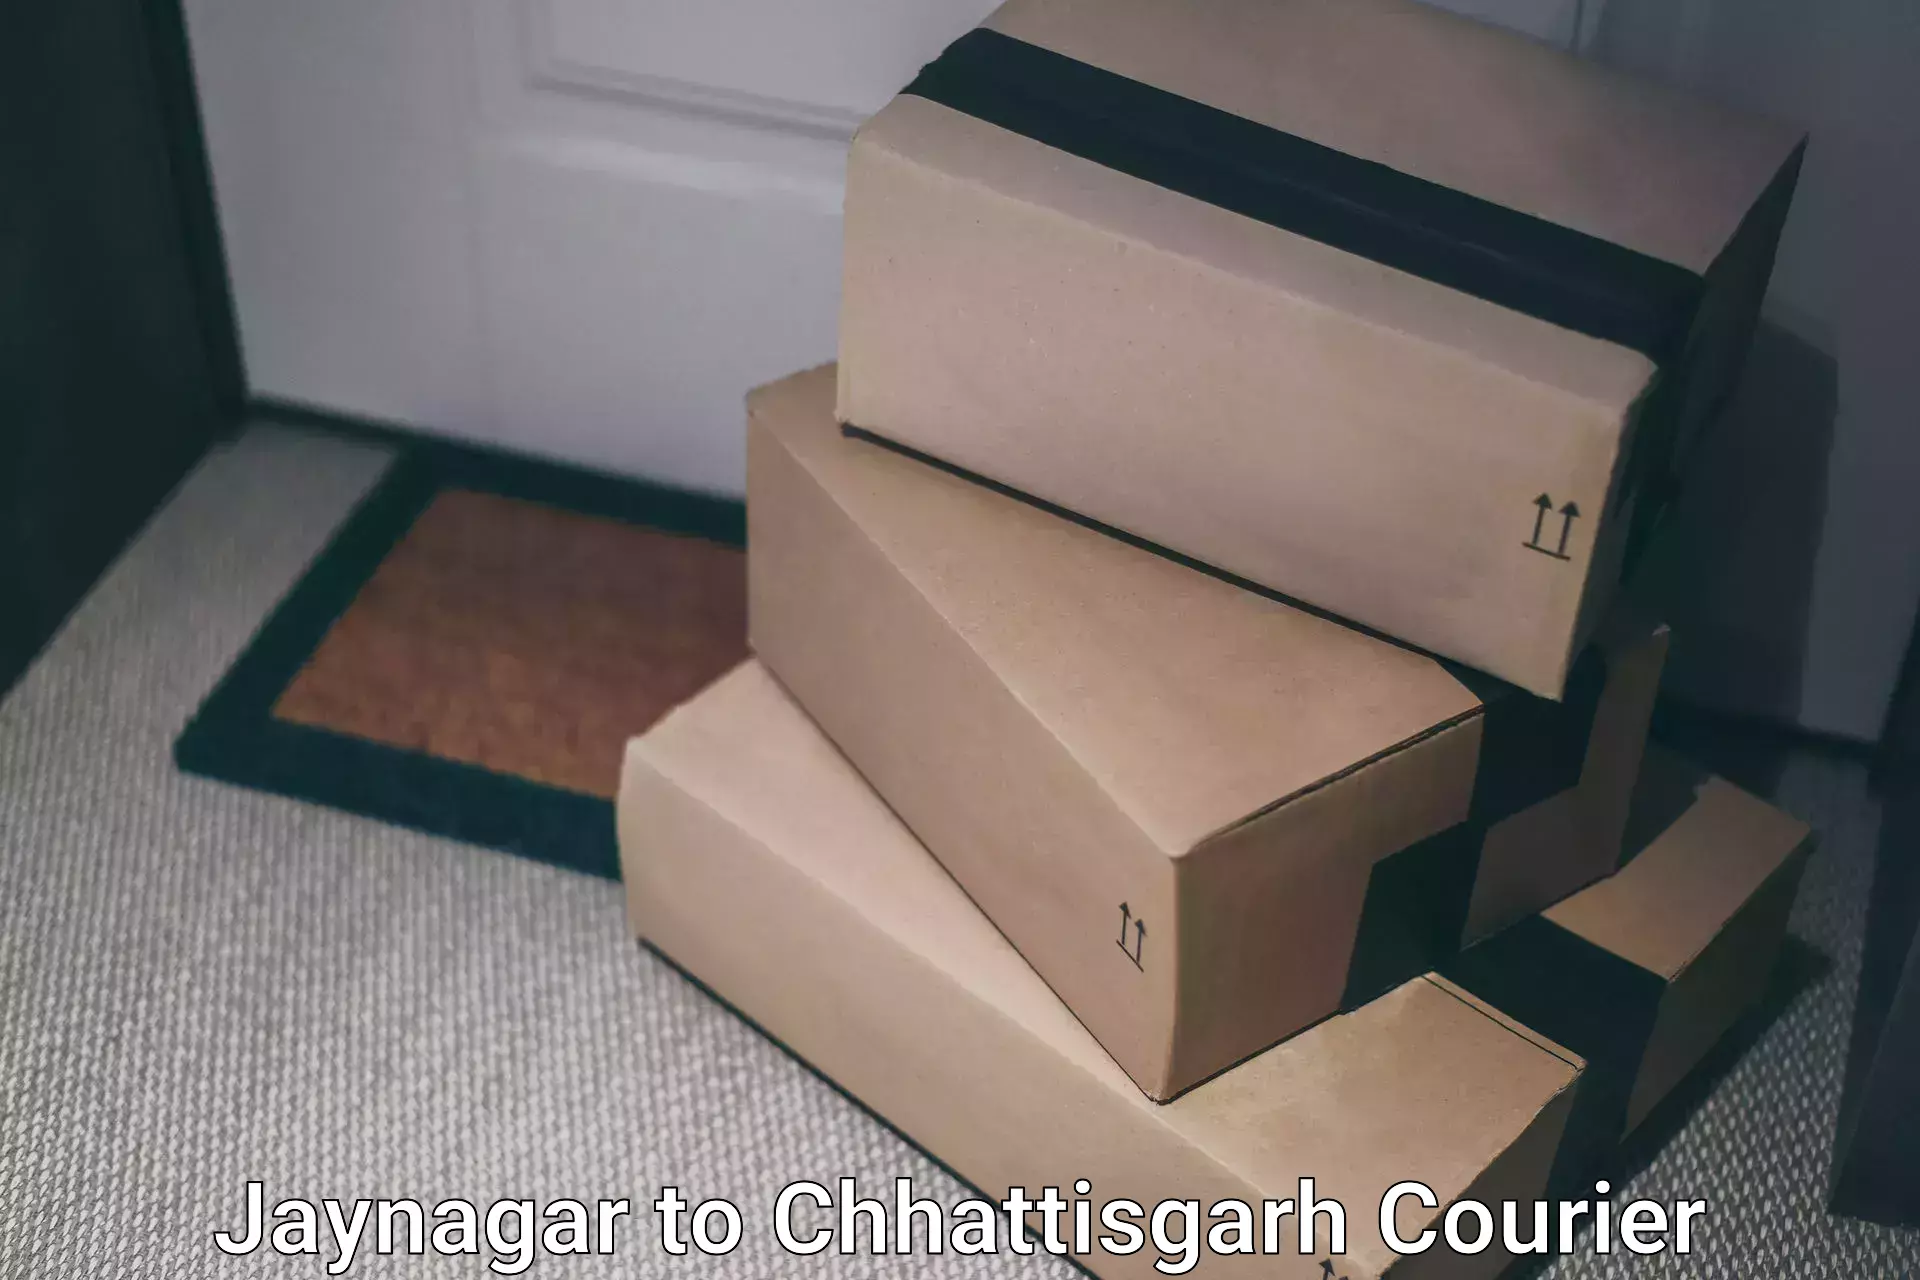 Express postal services Jaynagar to NIT Raipur